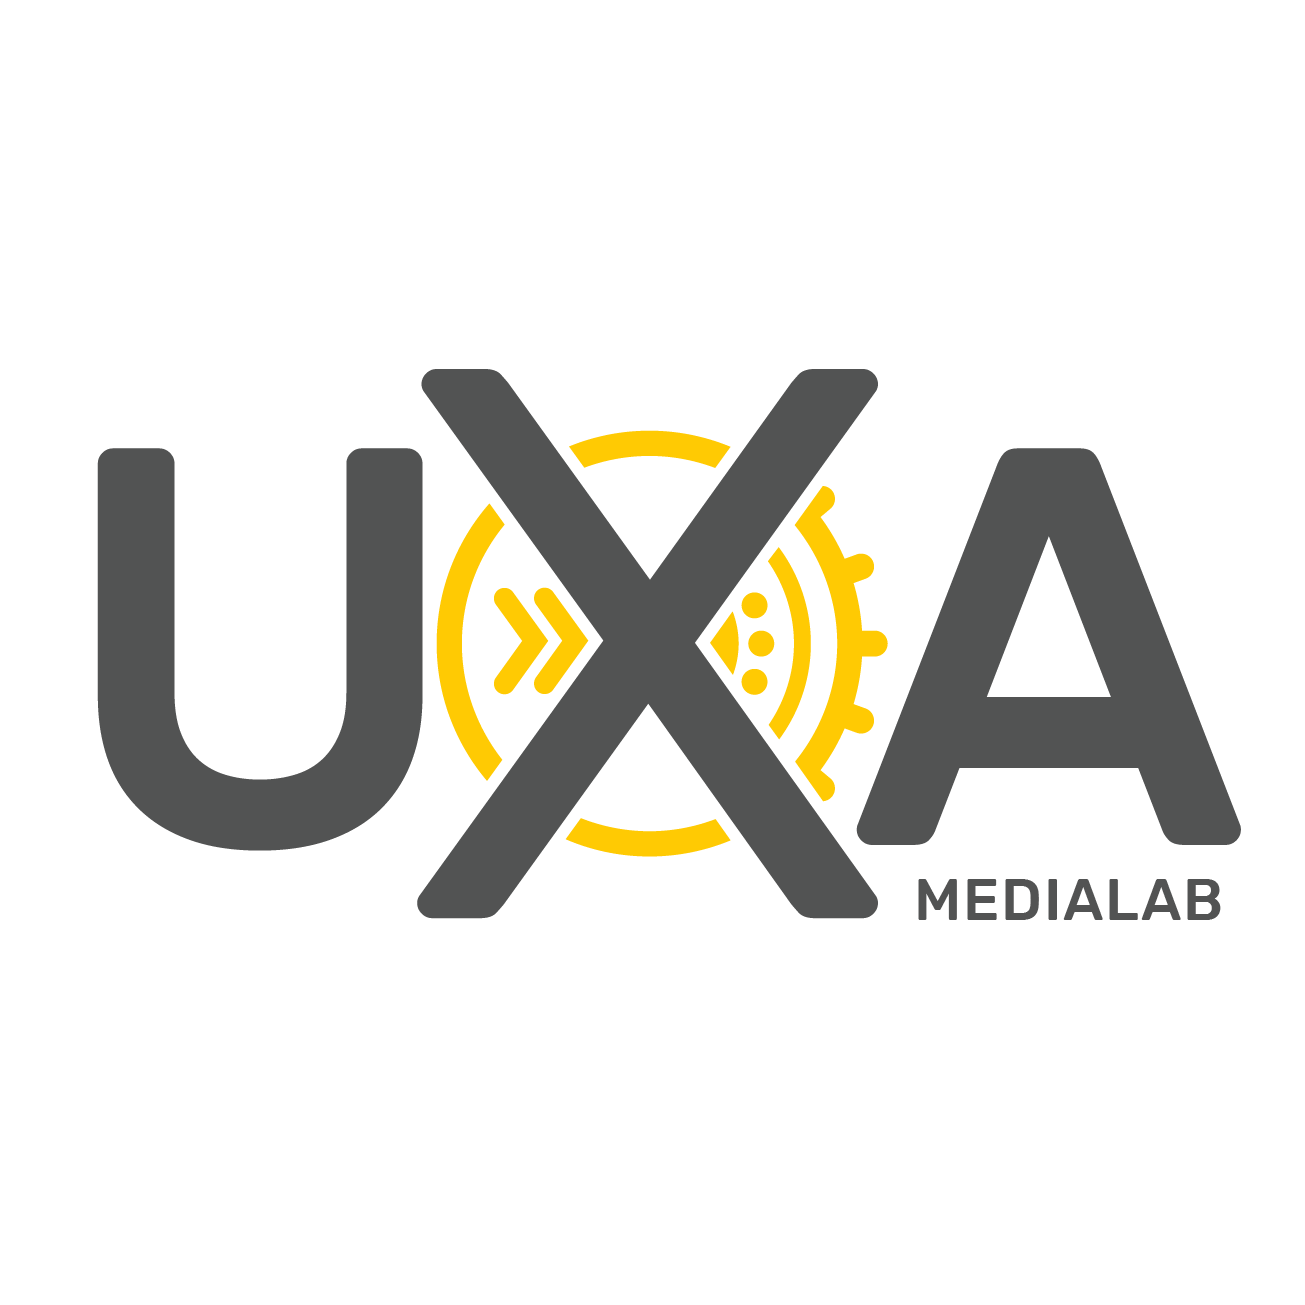 uxa_medialab